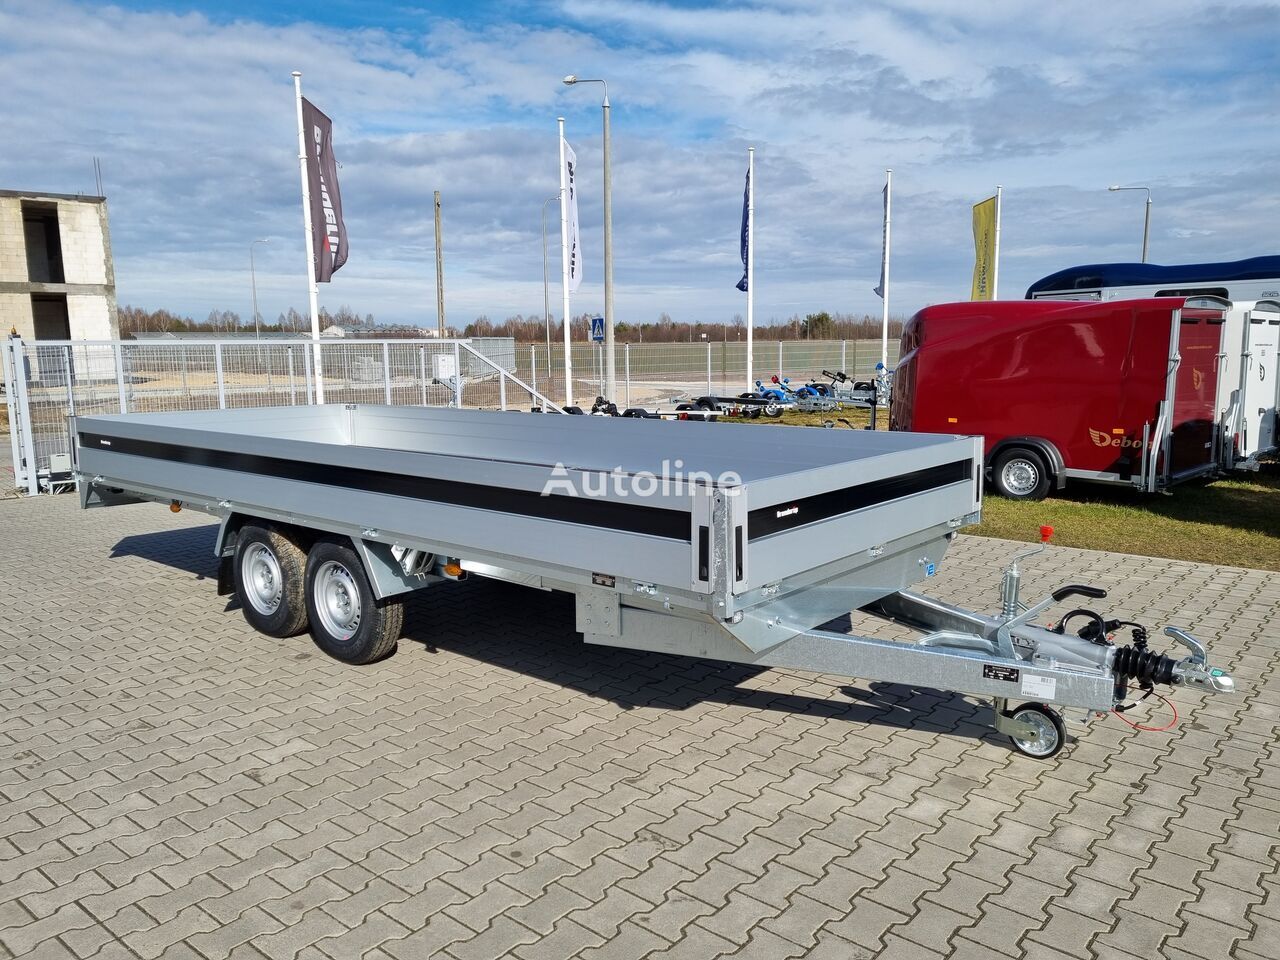 Nowy Przyczepa platforma/ Skrzyniowa Brenderup 5520 WATB 3,5T GVW 517x204 cm 5m long trailer platform: zdjęcie 2